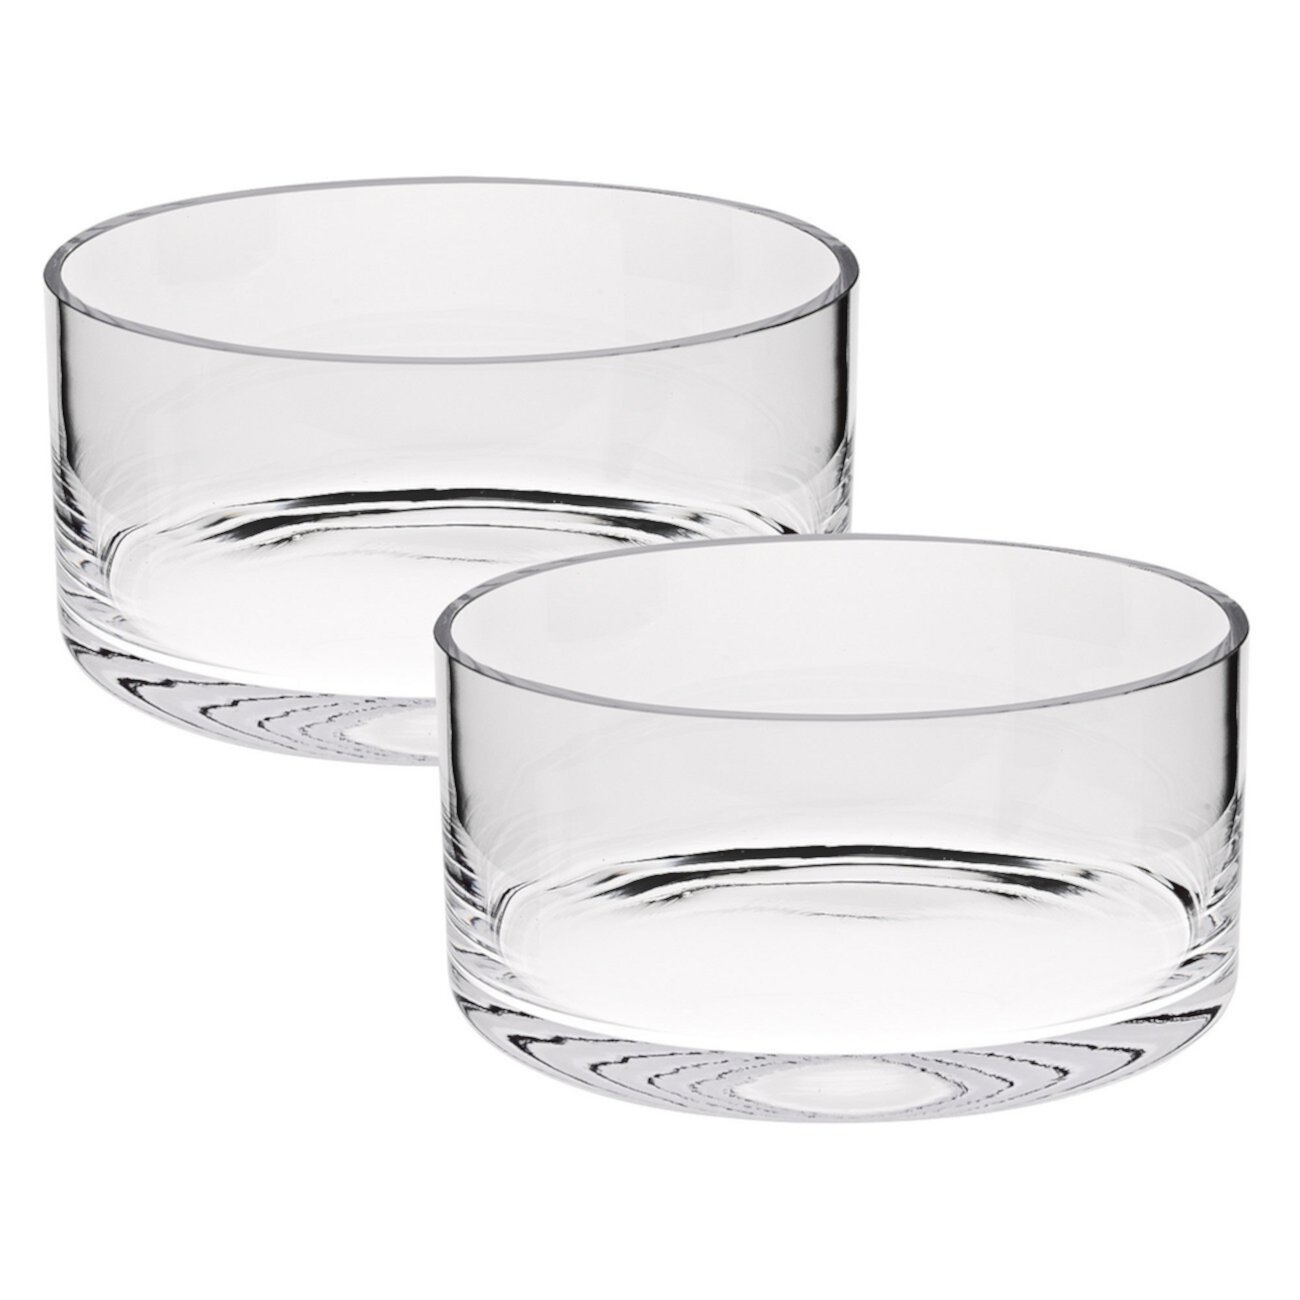 Хрустальная чаша Manhattan 5 дюймов - набор из 2 шт. Badash Crystal